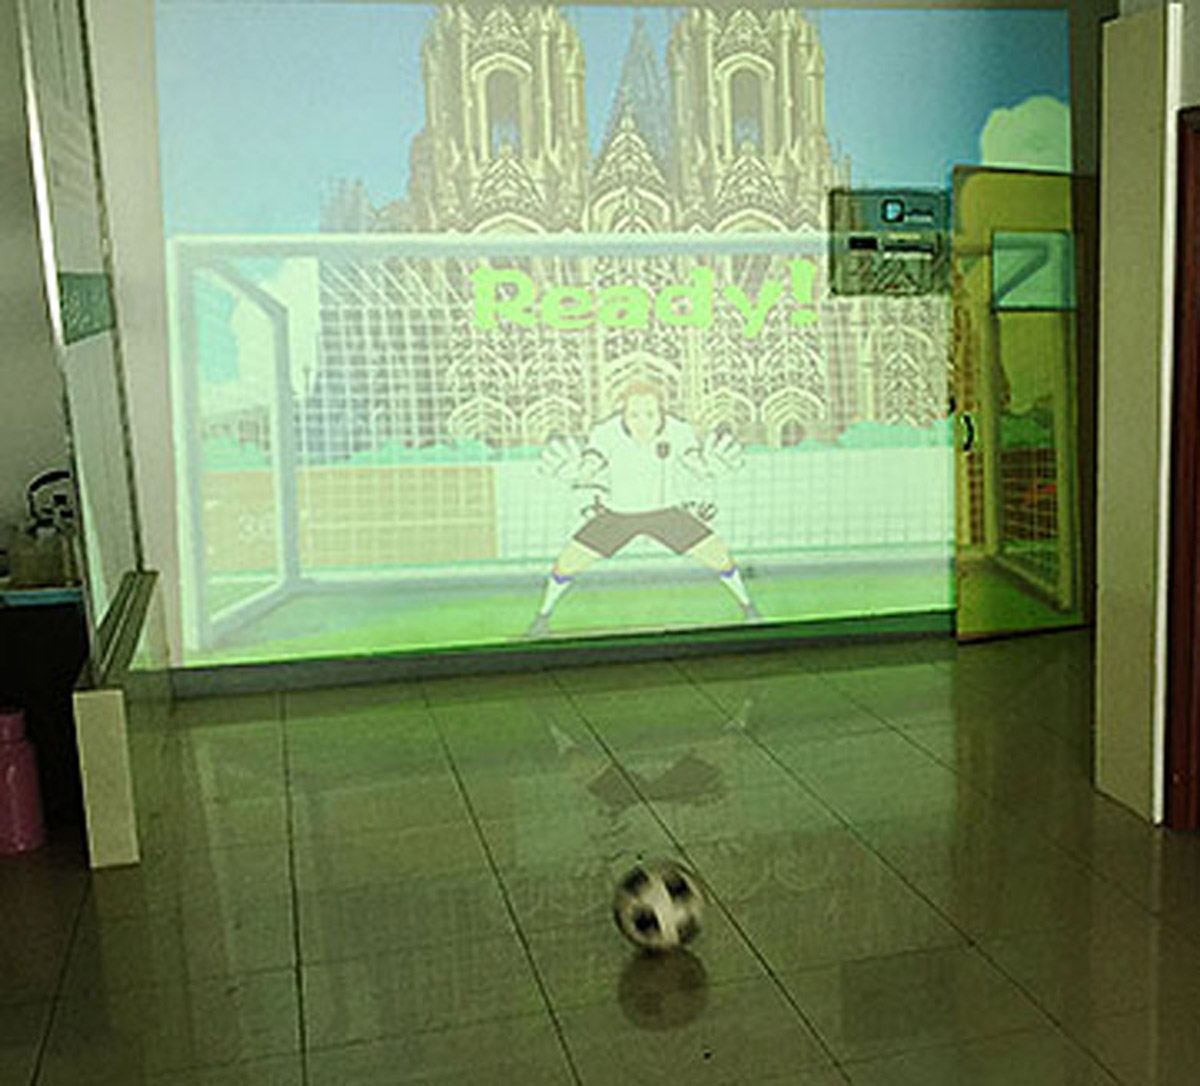 互动电影使用体感识别技术的虚拟足球射门.jpg